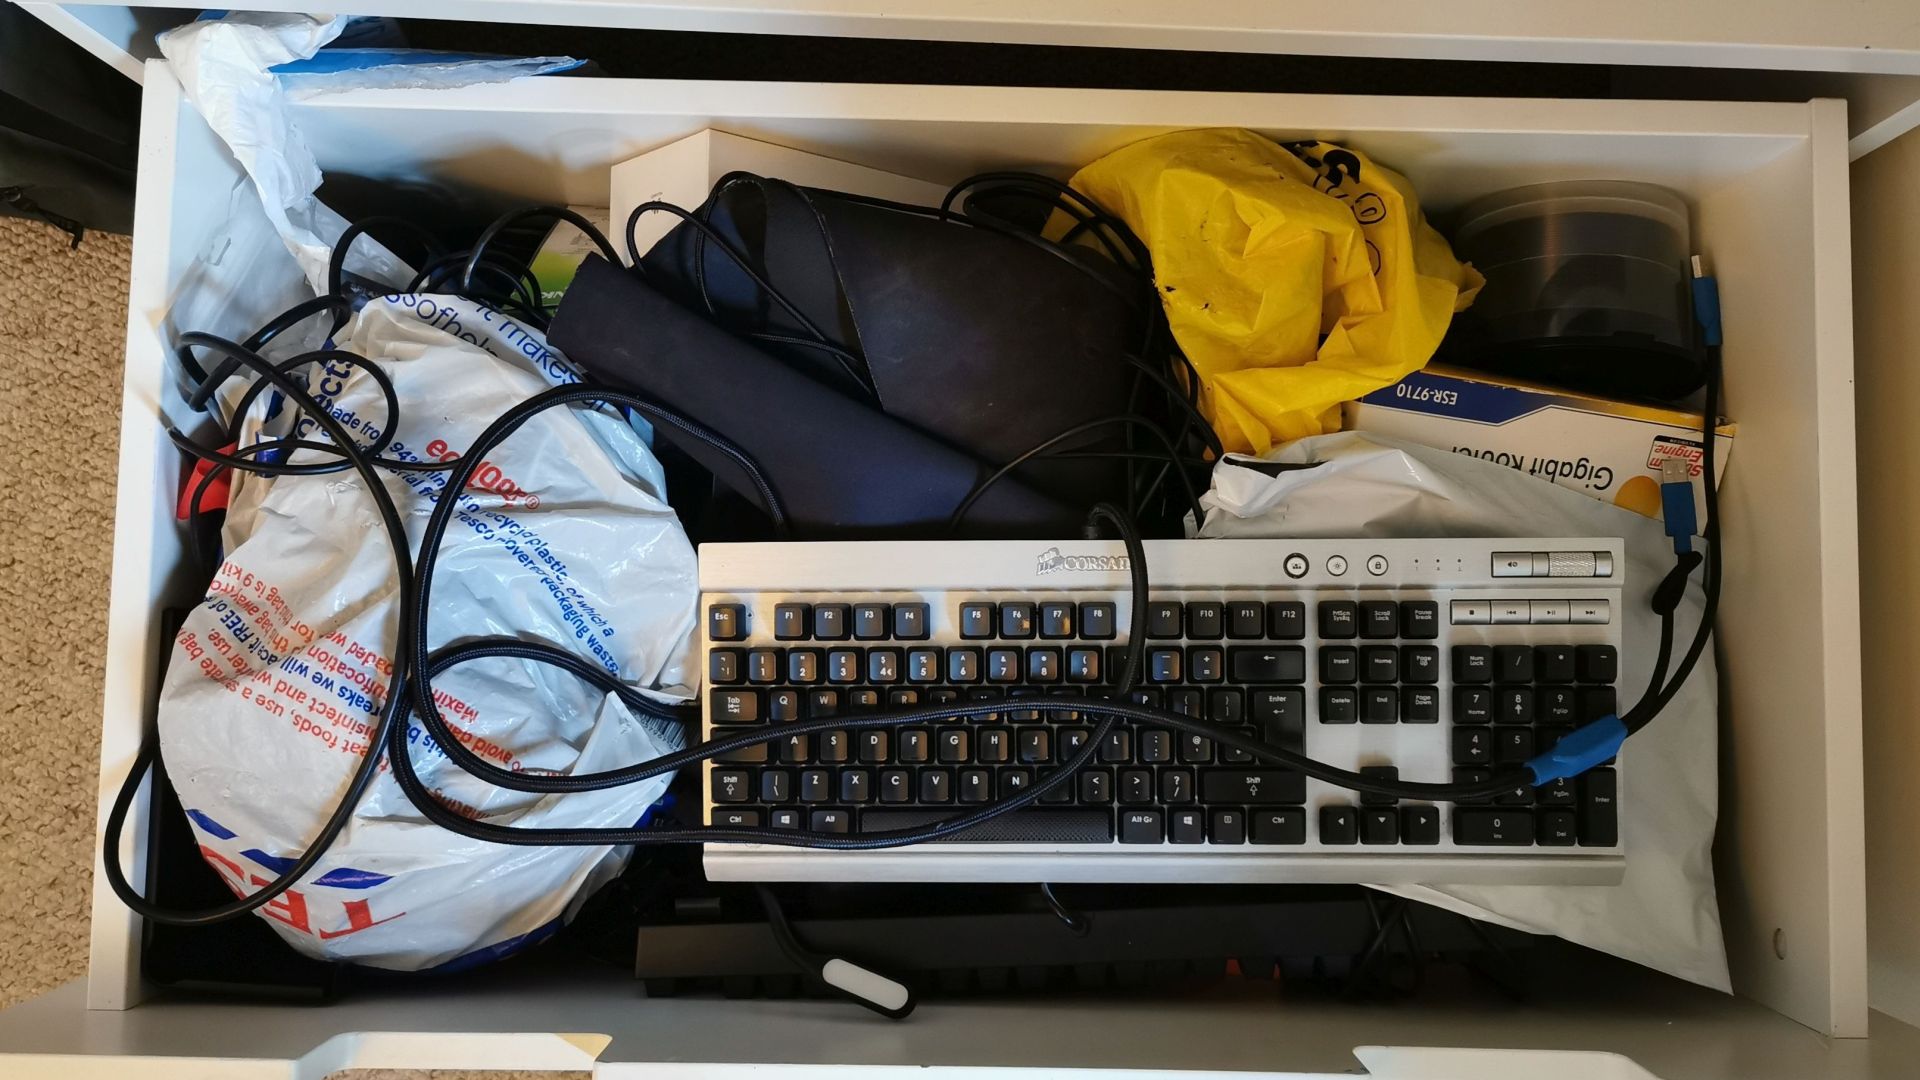 Una fotografía de un dibujo lleno de piezas de PC: un teclado, una pila de CD, varios cables, bolsas de plástico con gubbins desconocidos.